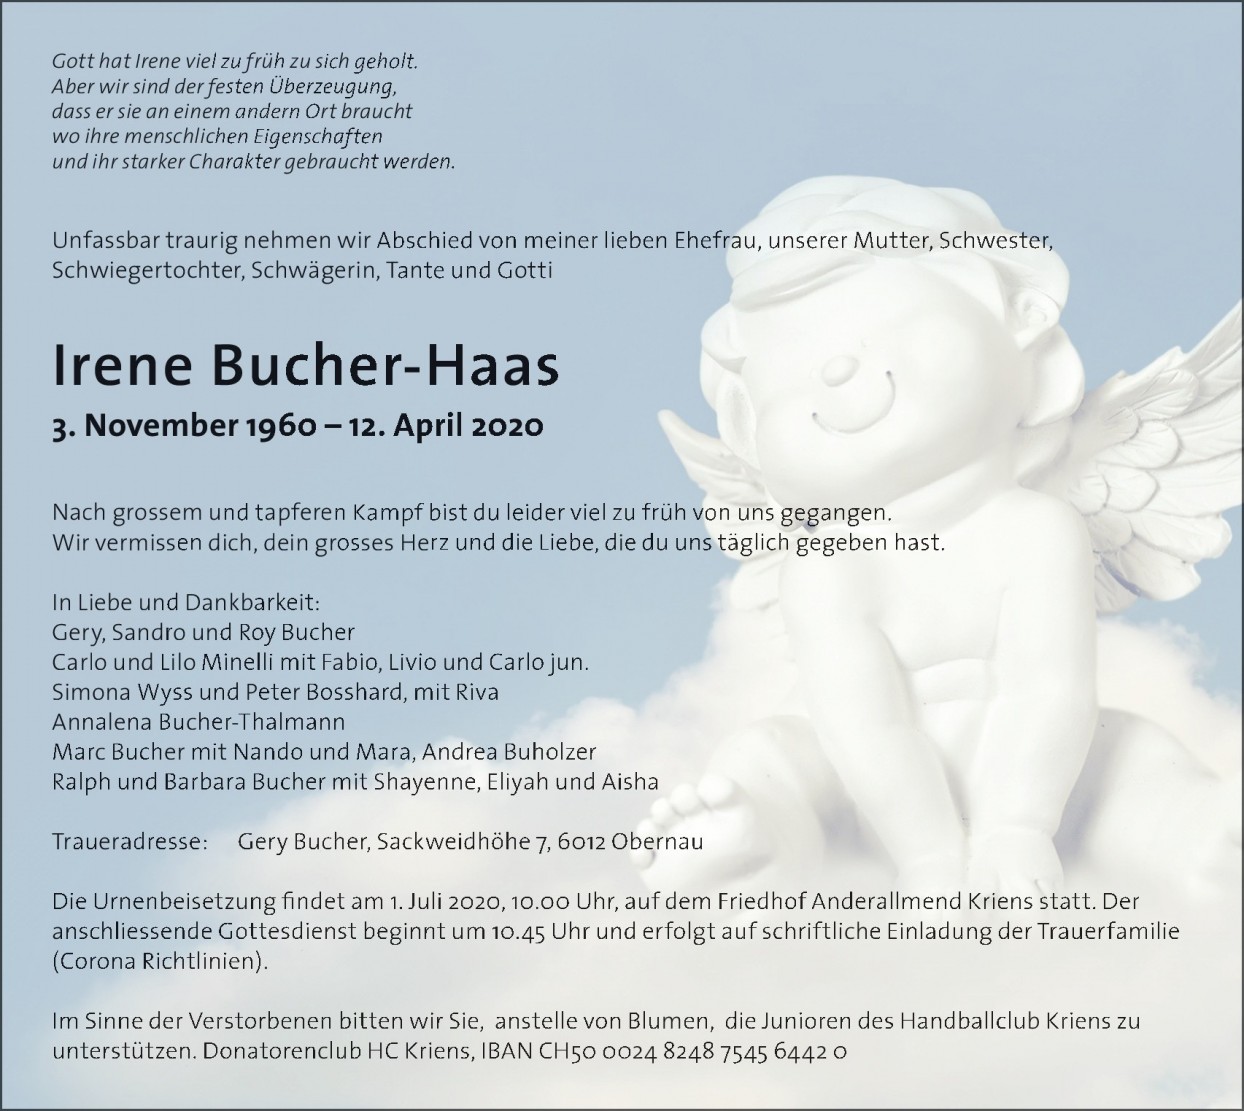 Irene Bucher-Haas